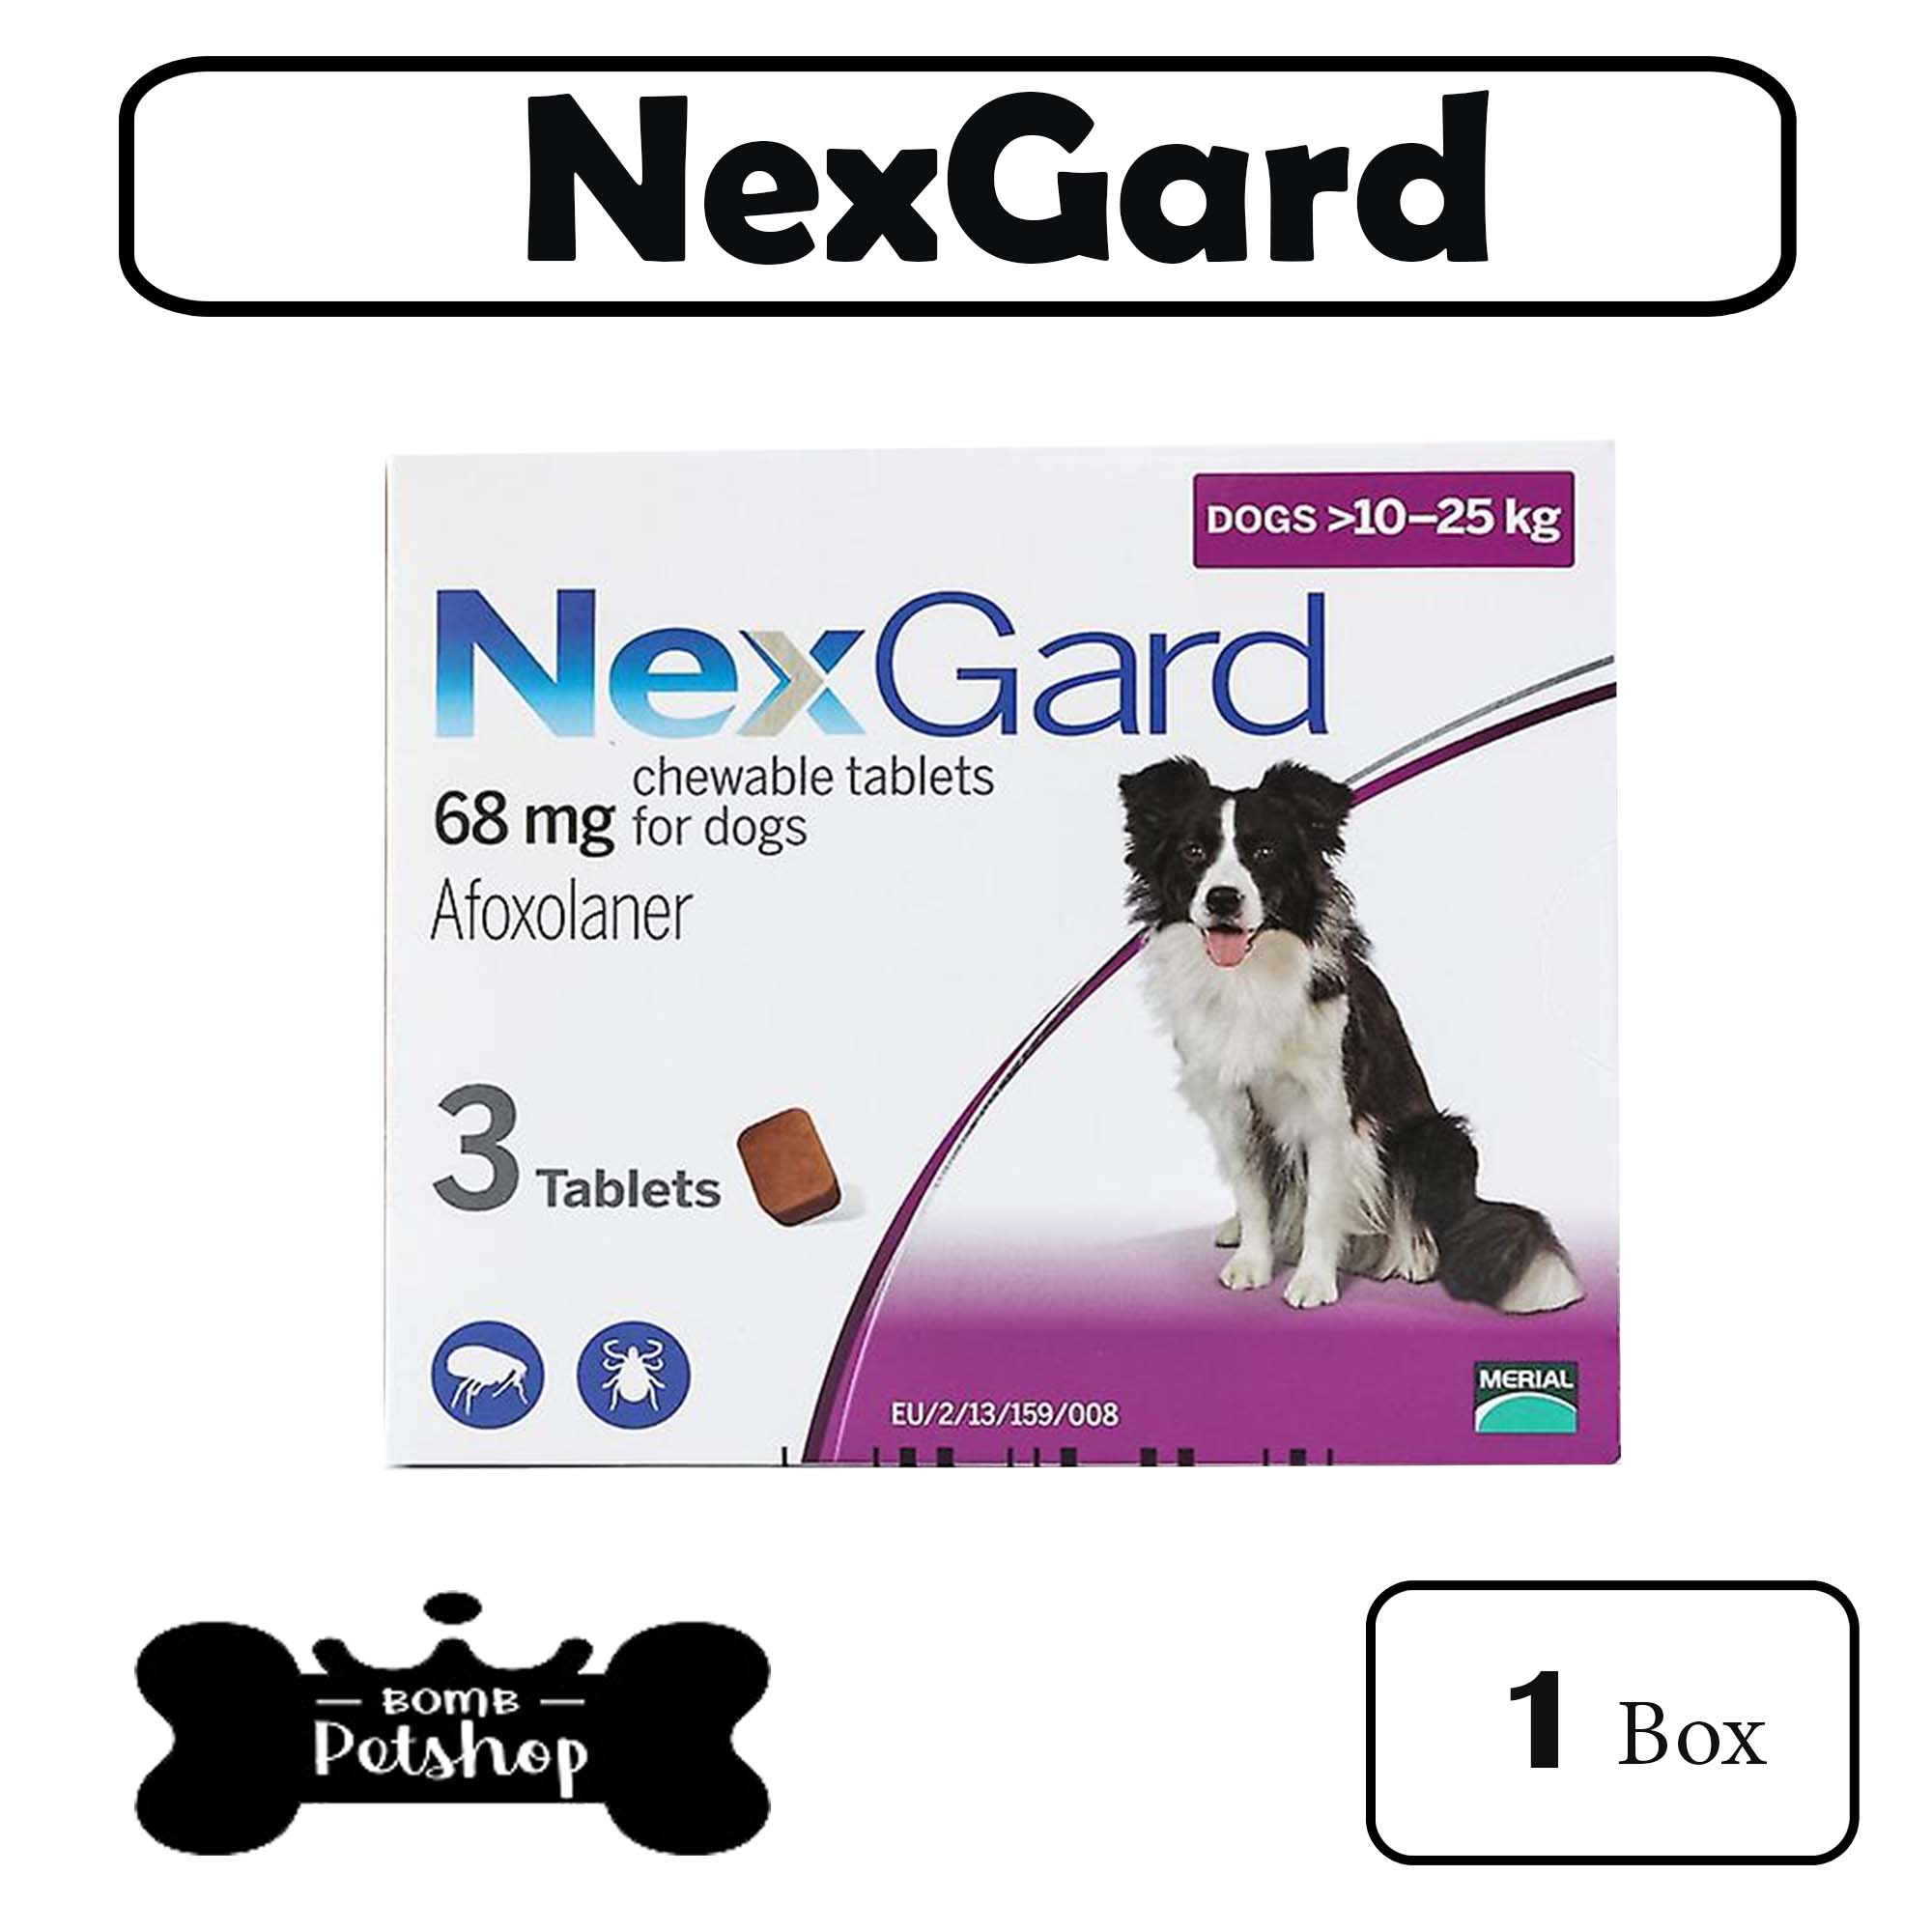 Nexgard Dog tick & flea เน็กการ์ด สุนัข 1 กล่อง นน. 10 - 25 kg  (Exp.09-2022)